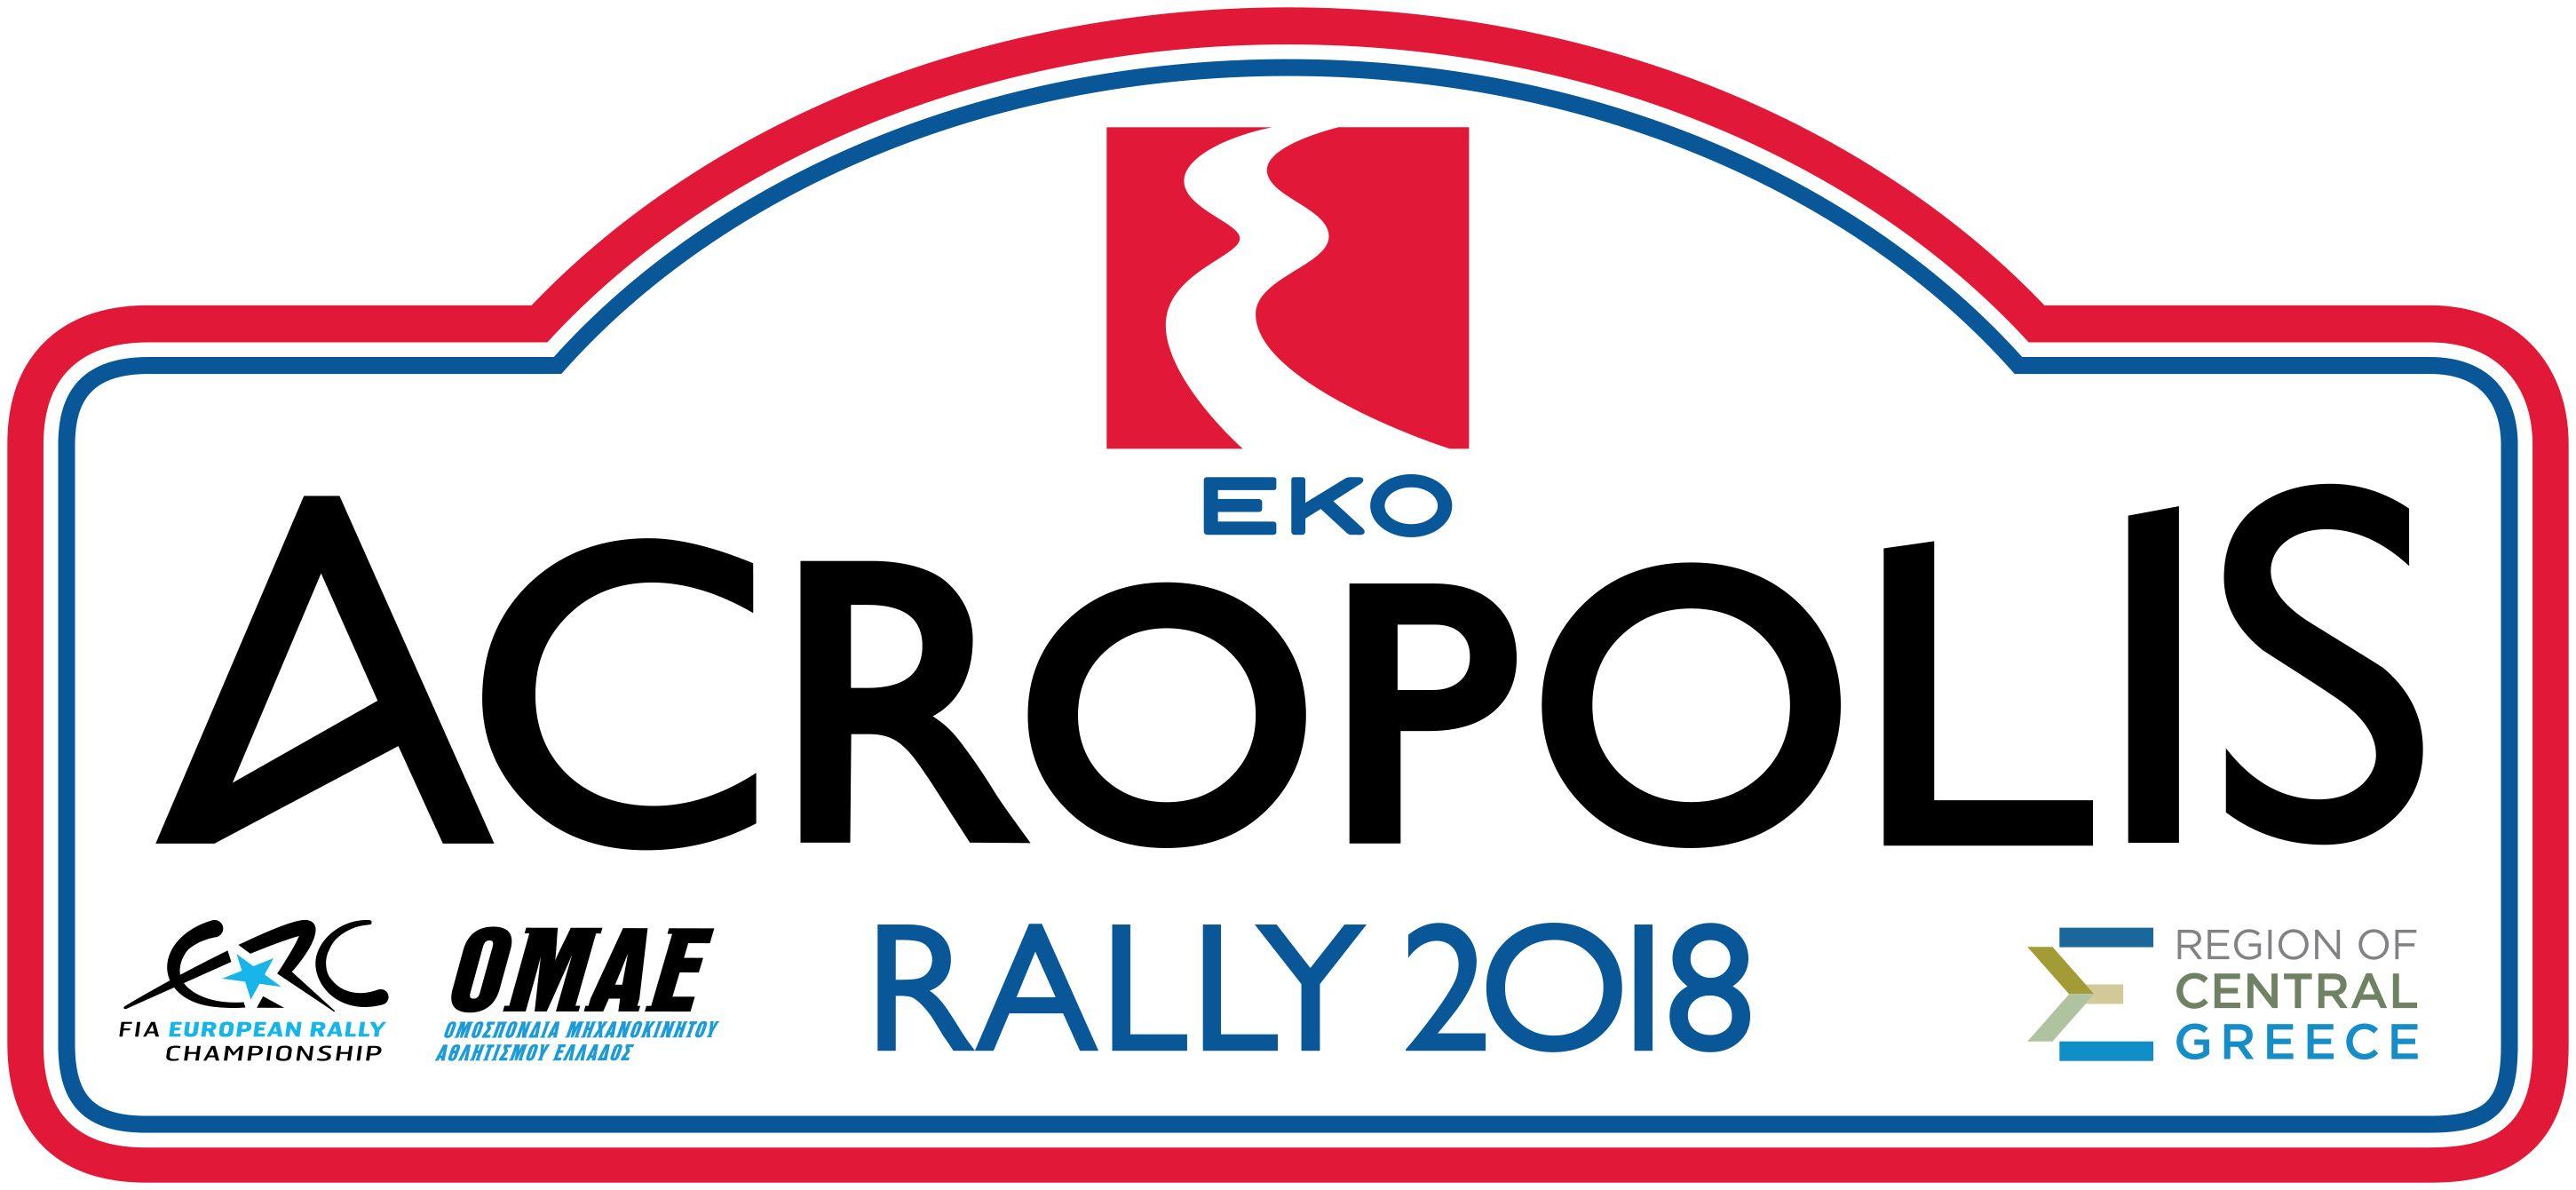 Rally Logo - Acropolis Rally 2018 - Logos